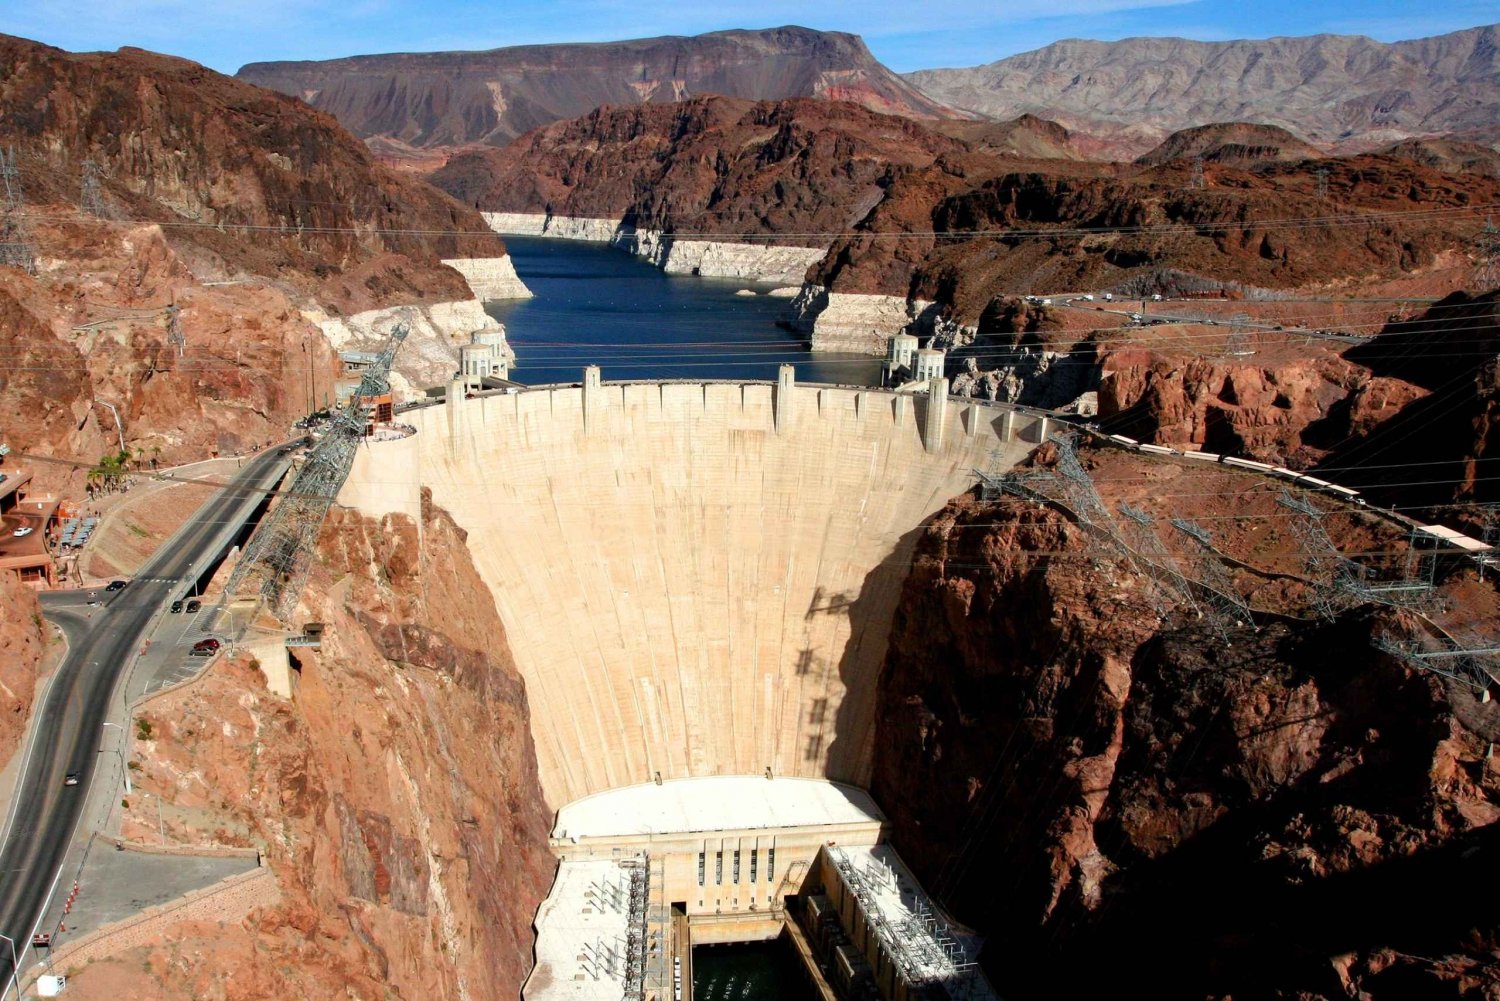 Vanuit Las Vegas: VIP Hoover Dam-excursie met kleine groepen